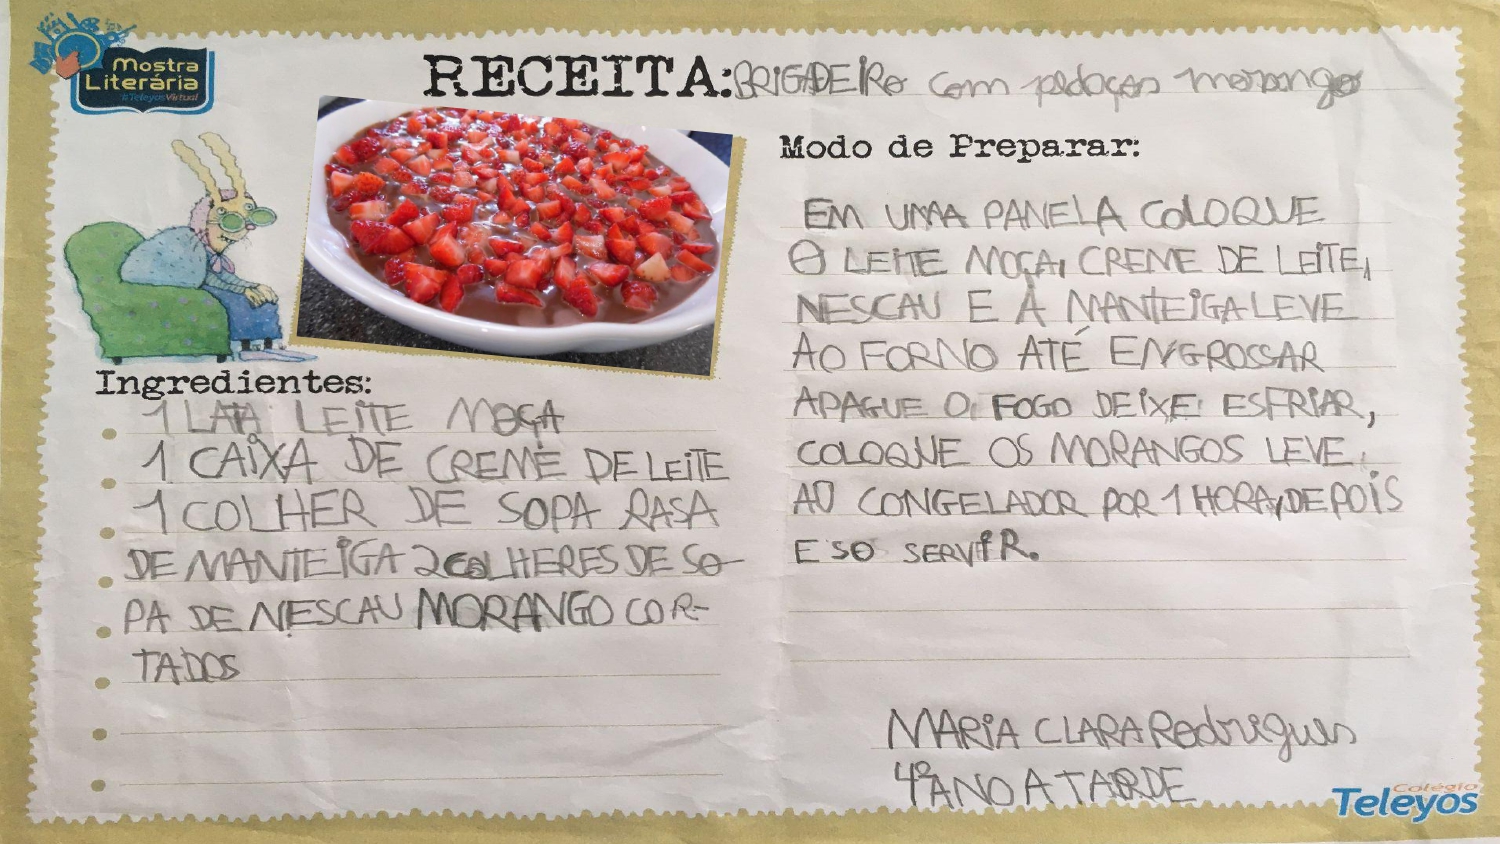 MARIA CLARA RODRIGUES SILVA - Brigadeiro com pedaços de morango 